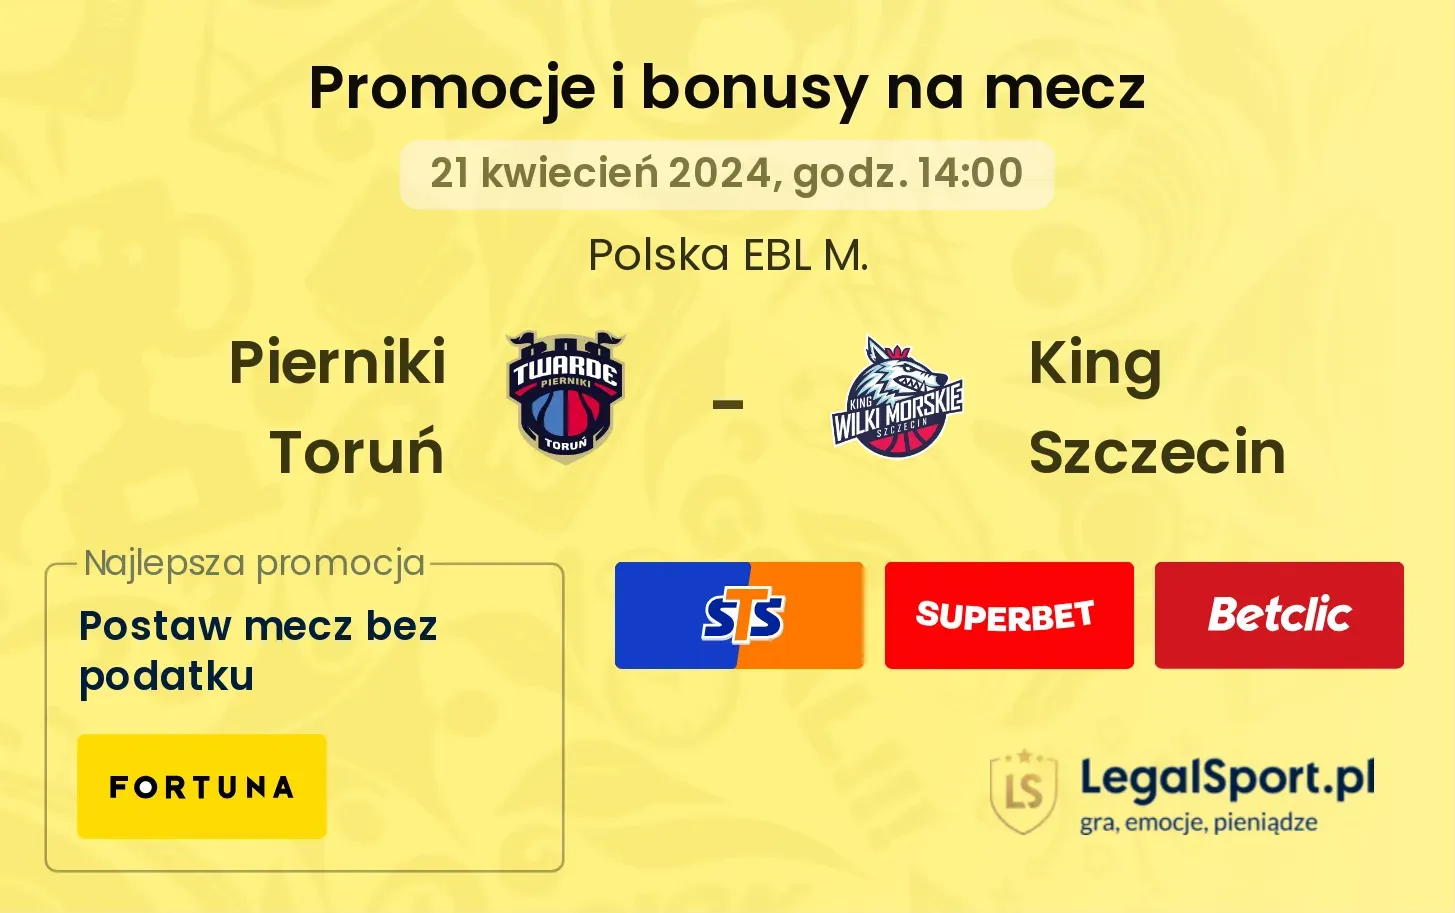 Pierniki Toruń - King Szczecin promocje bonusy na mecz